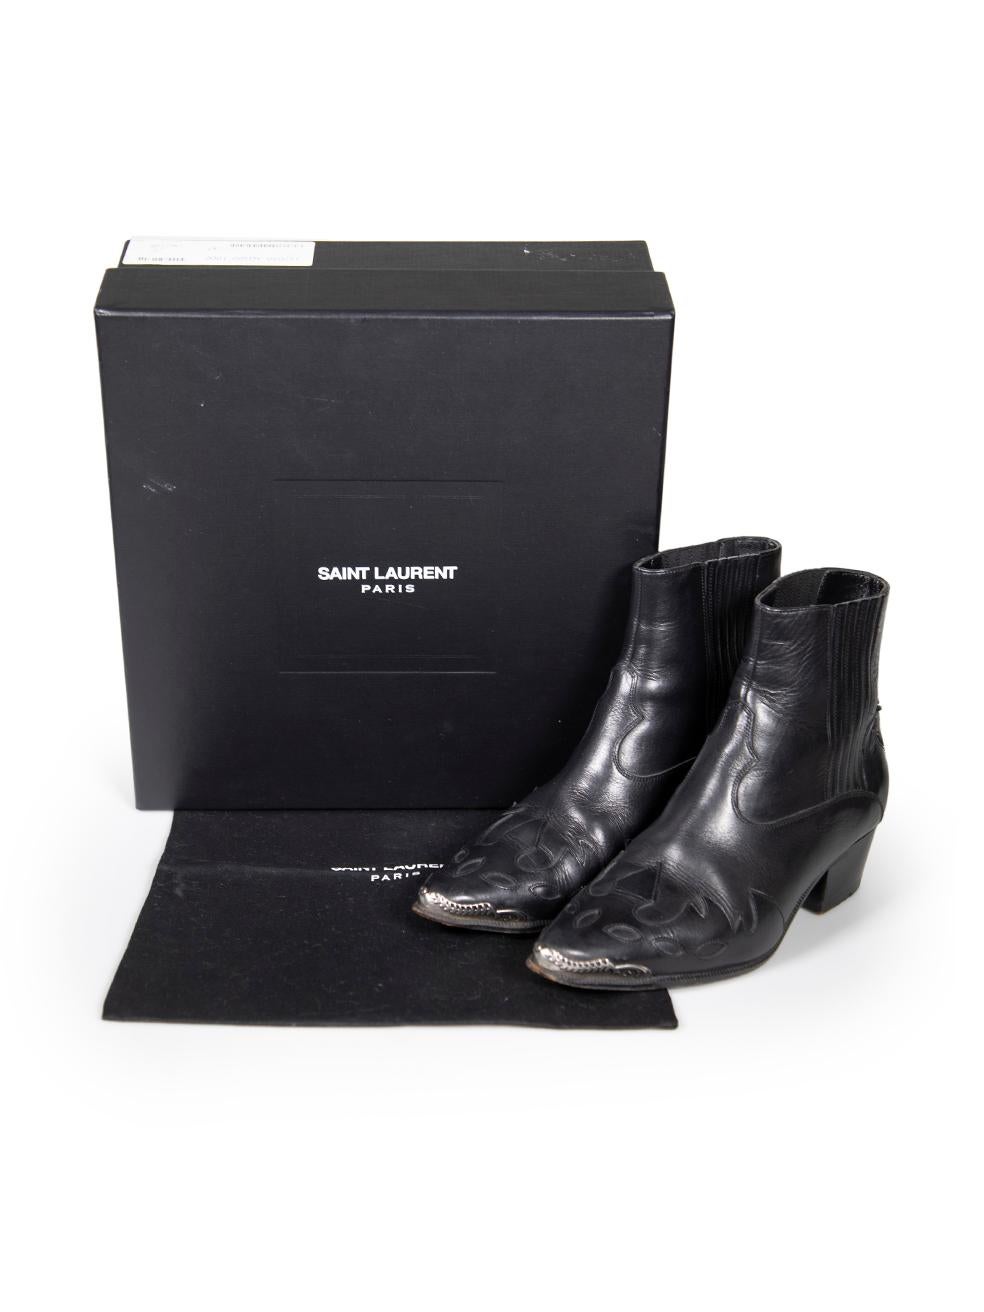 Saint Laurent Black Leather Western Cowboy Boots Size IT 37 For Sale 3